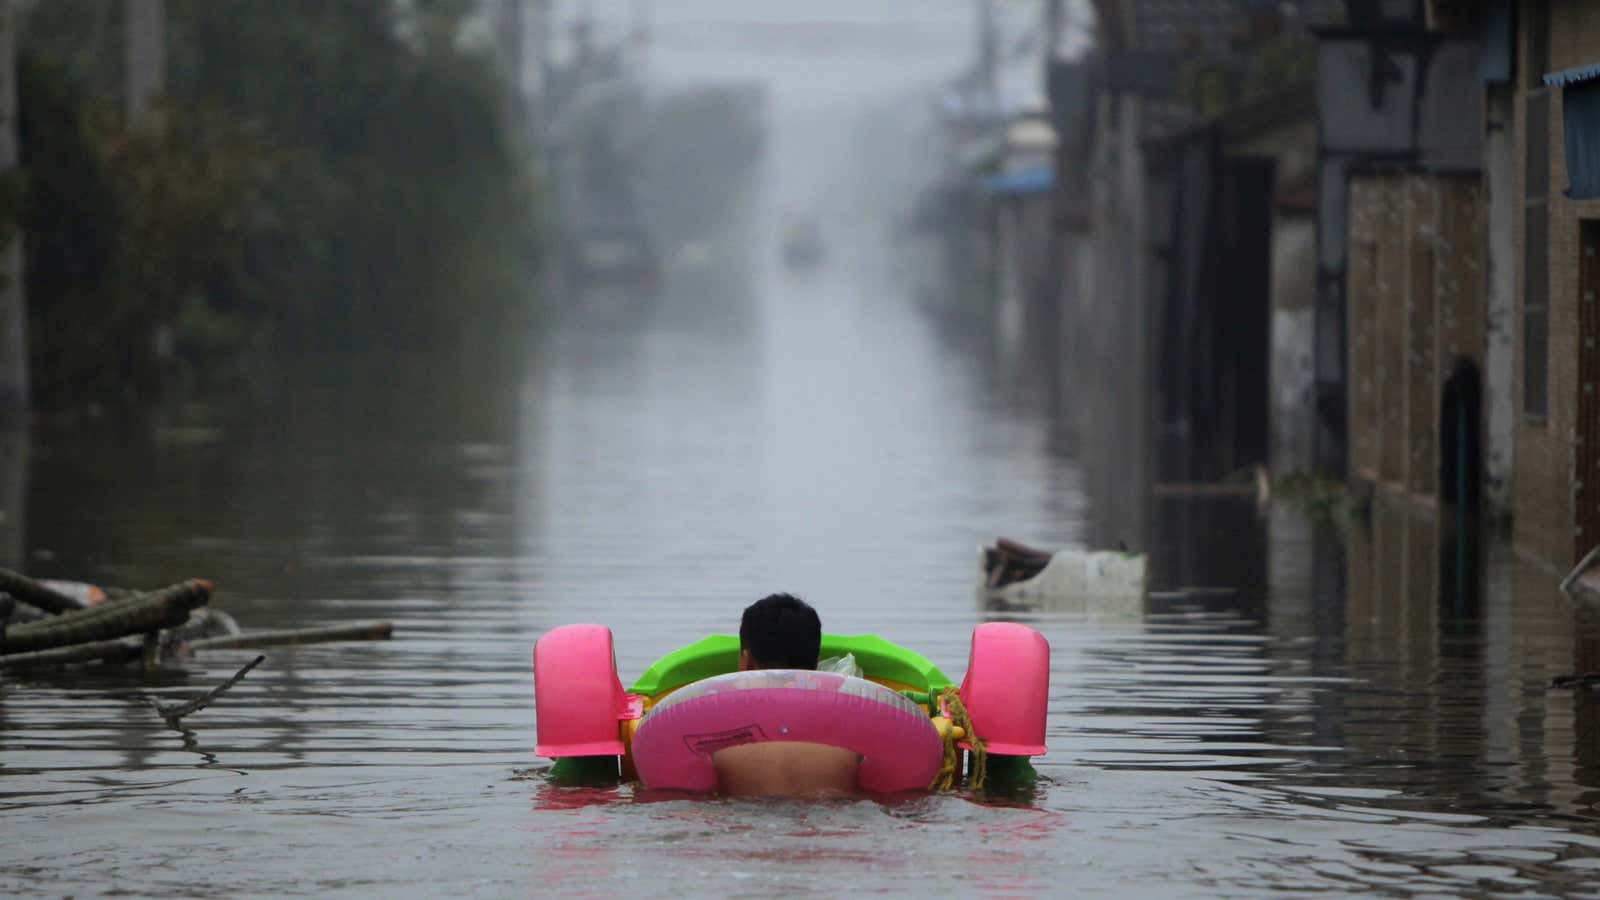 Yuyao’s flooding augurs China’s watery future.